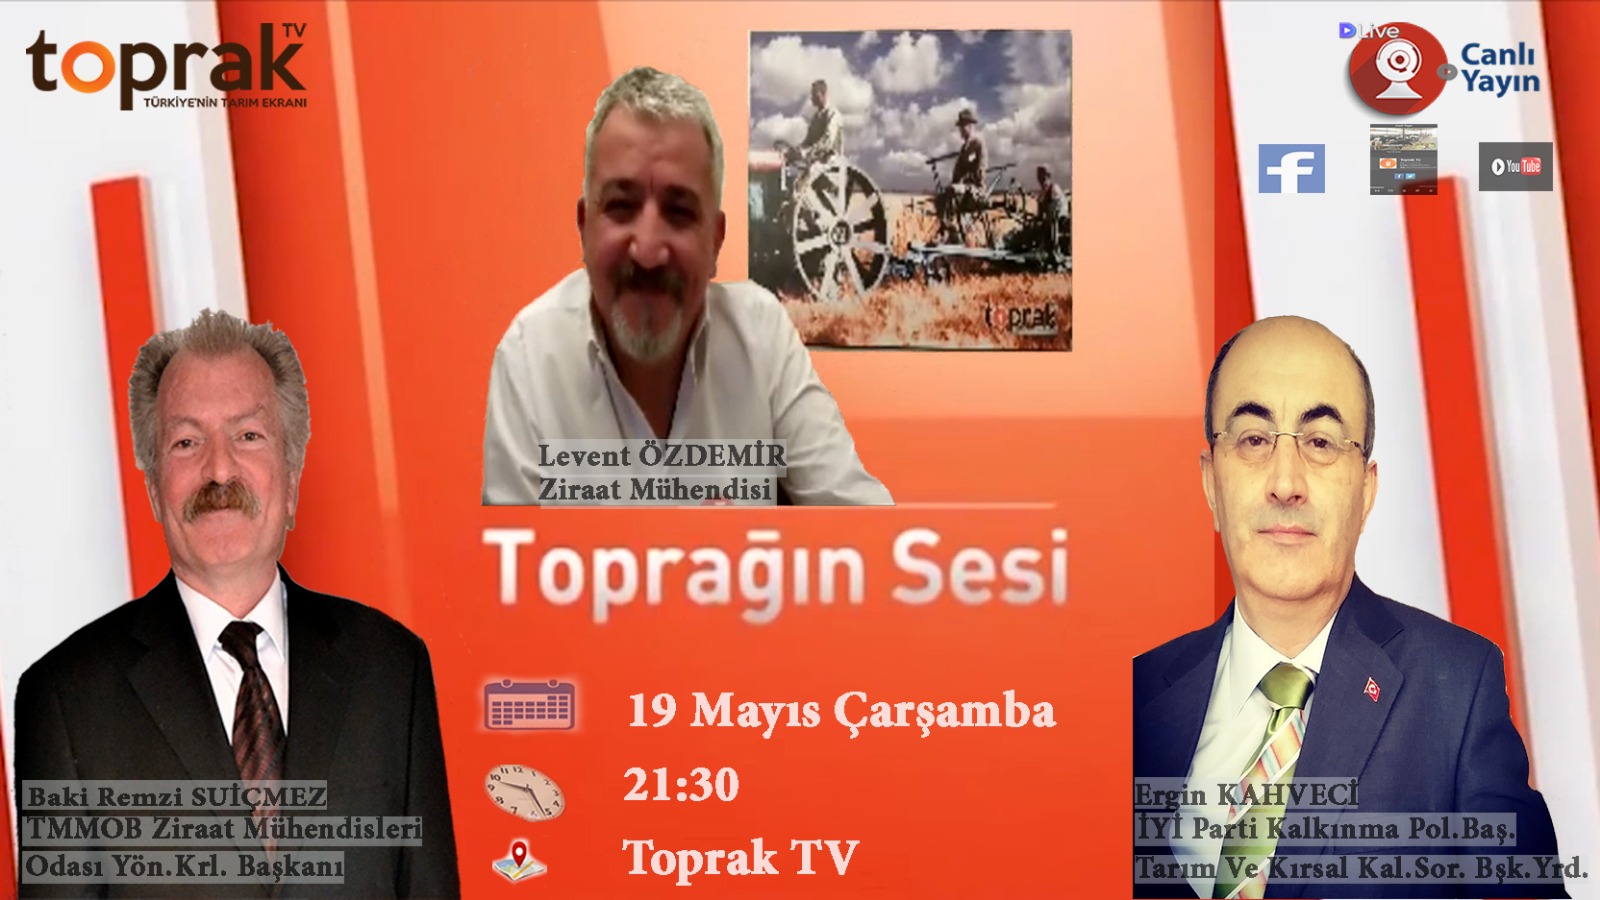 TOPRAK TV- "TOPRAĞIN SESİ" PROGRAMI